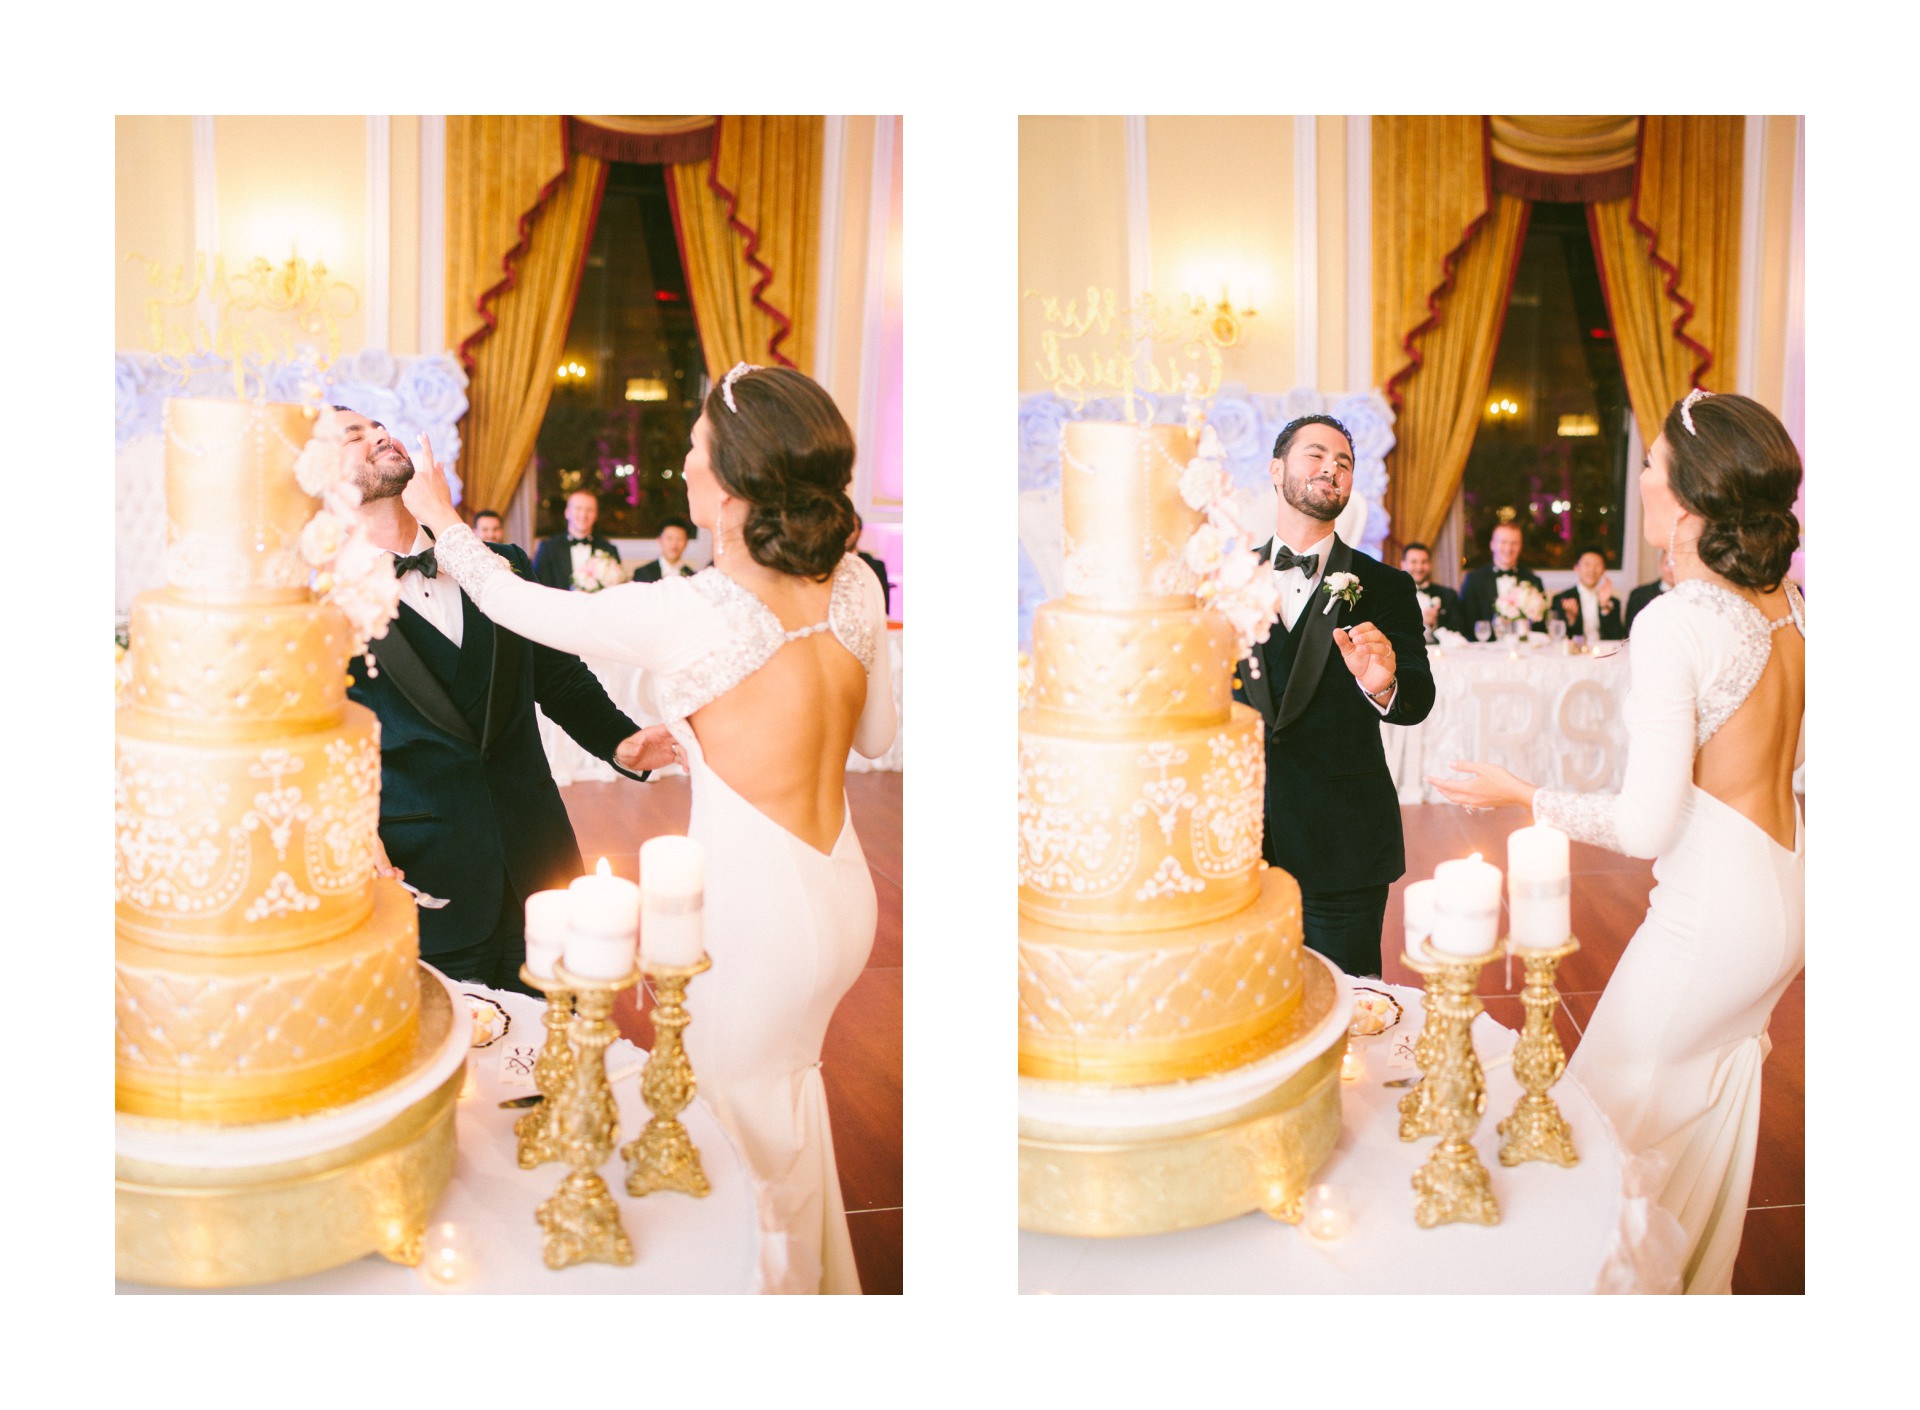 Renaissance Hotel Wedding Photos in Cleveland 3 35.jpg